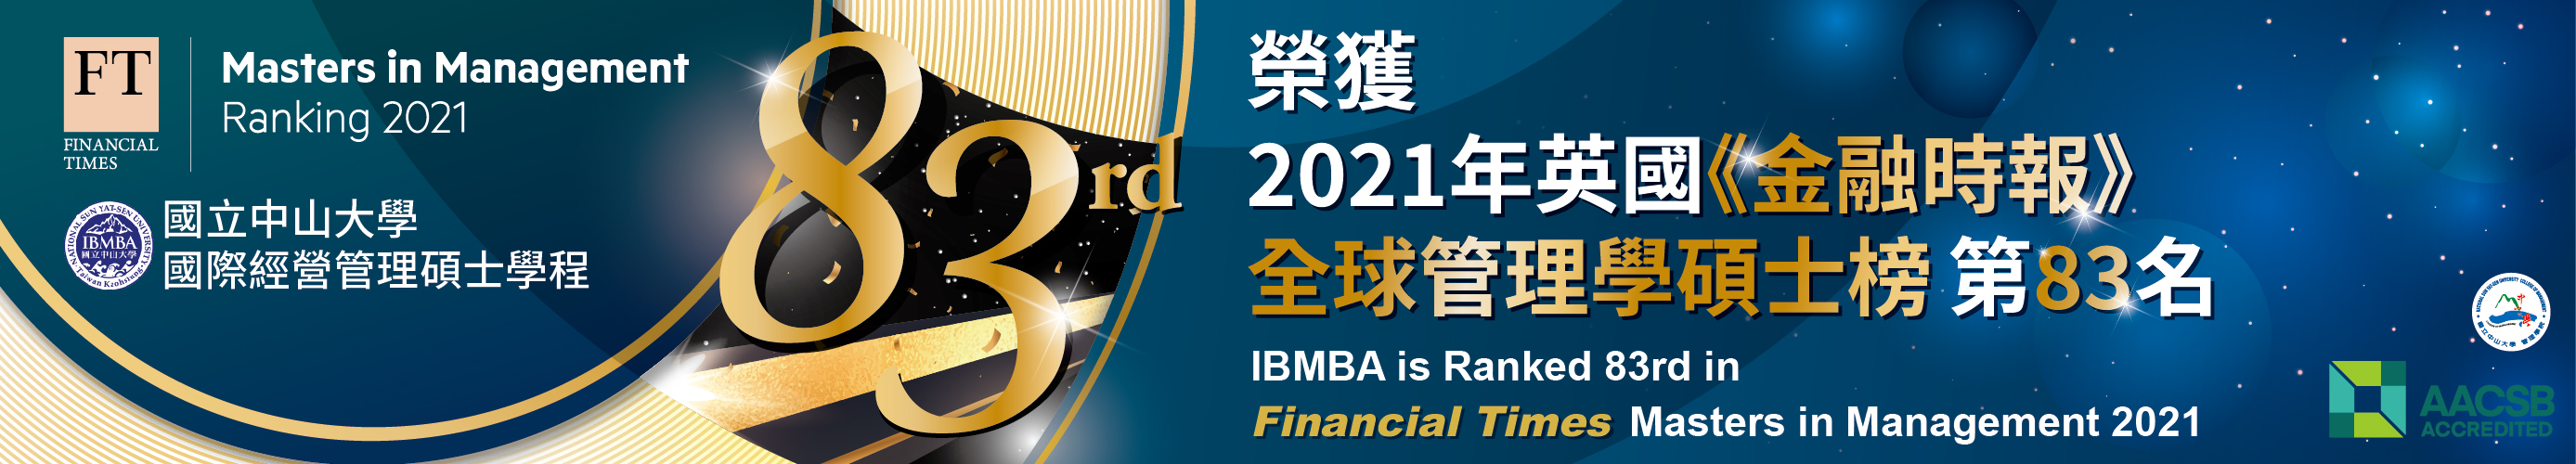 2021金融時報MiM排行榜 中山IBMBA躍進為第83名